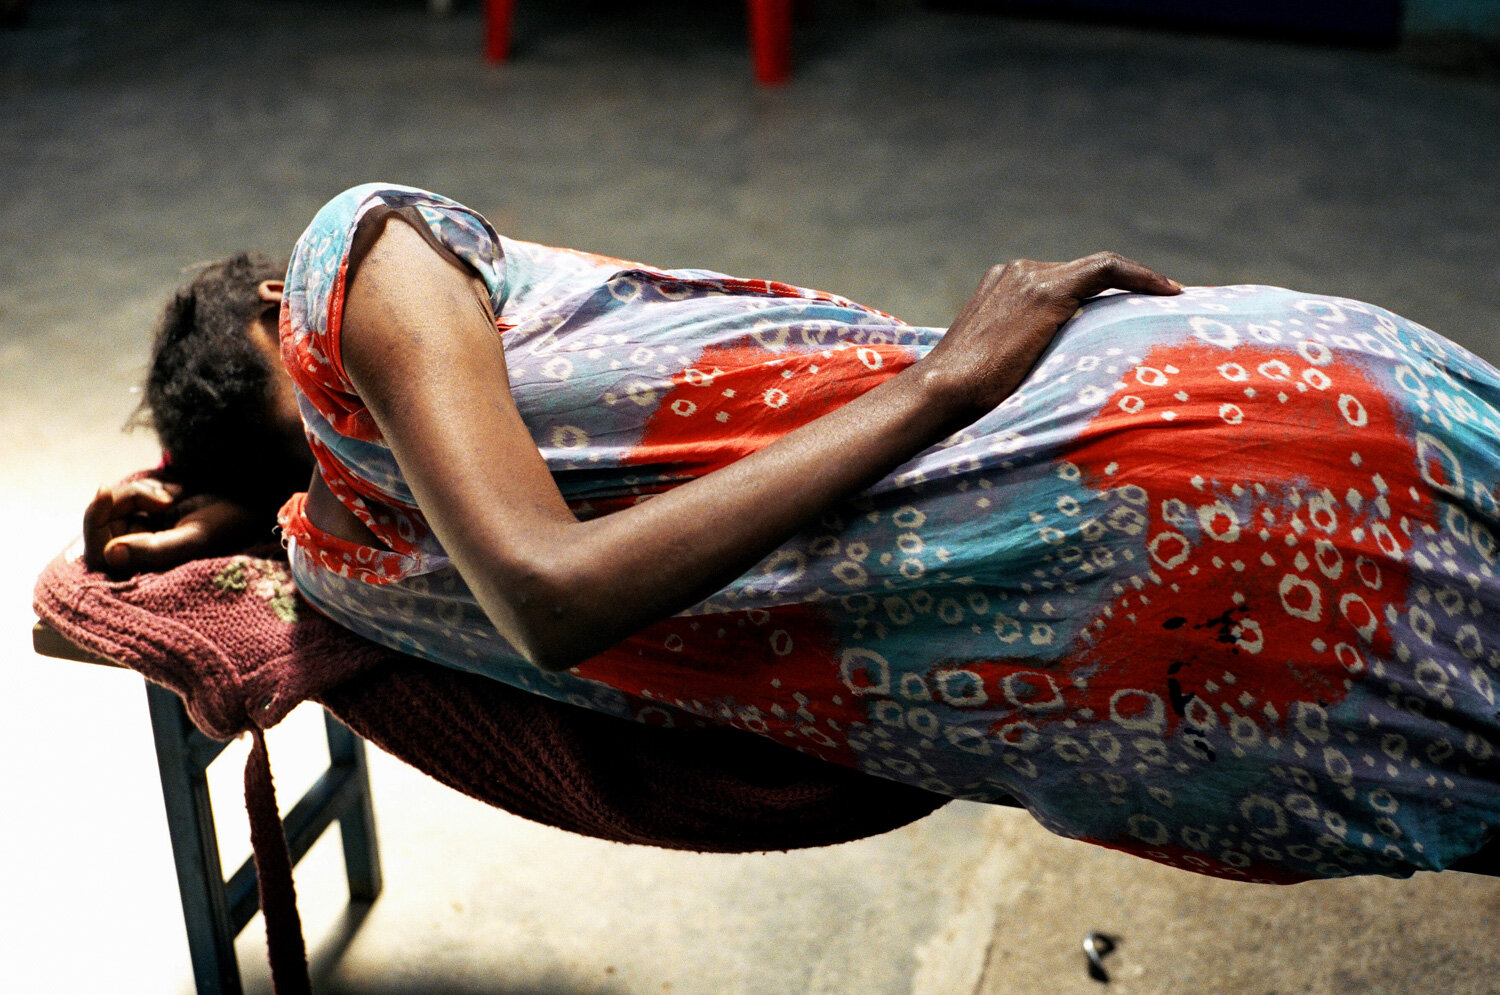  Une femme dort sur un banc de la salle d'attente de la clinique SIDA du bidonville de Matharé. Les temps d'attente sont très longs : MSF procède à plus de 100 consultations par jour. Avec Médecins Sans Frontières, dans la lutte pour l'accès aux médi